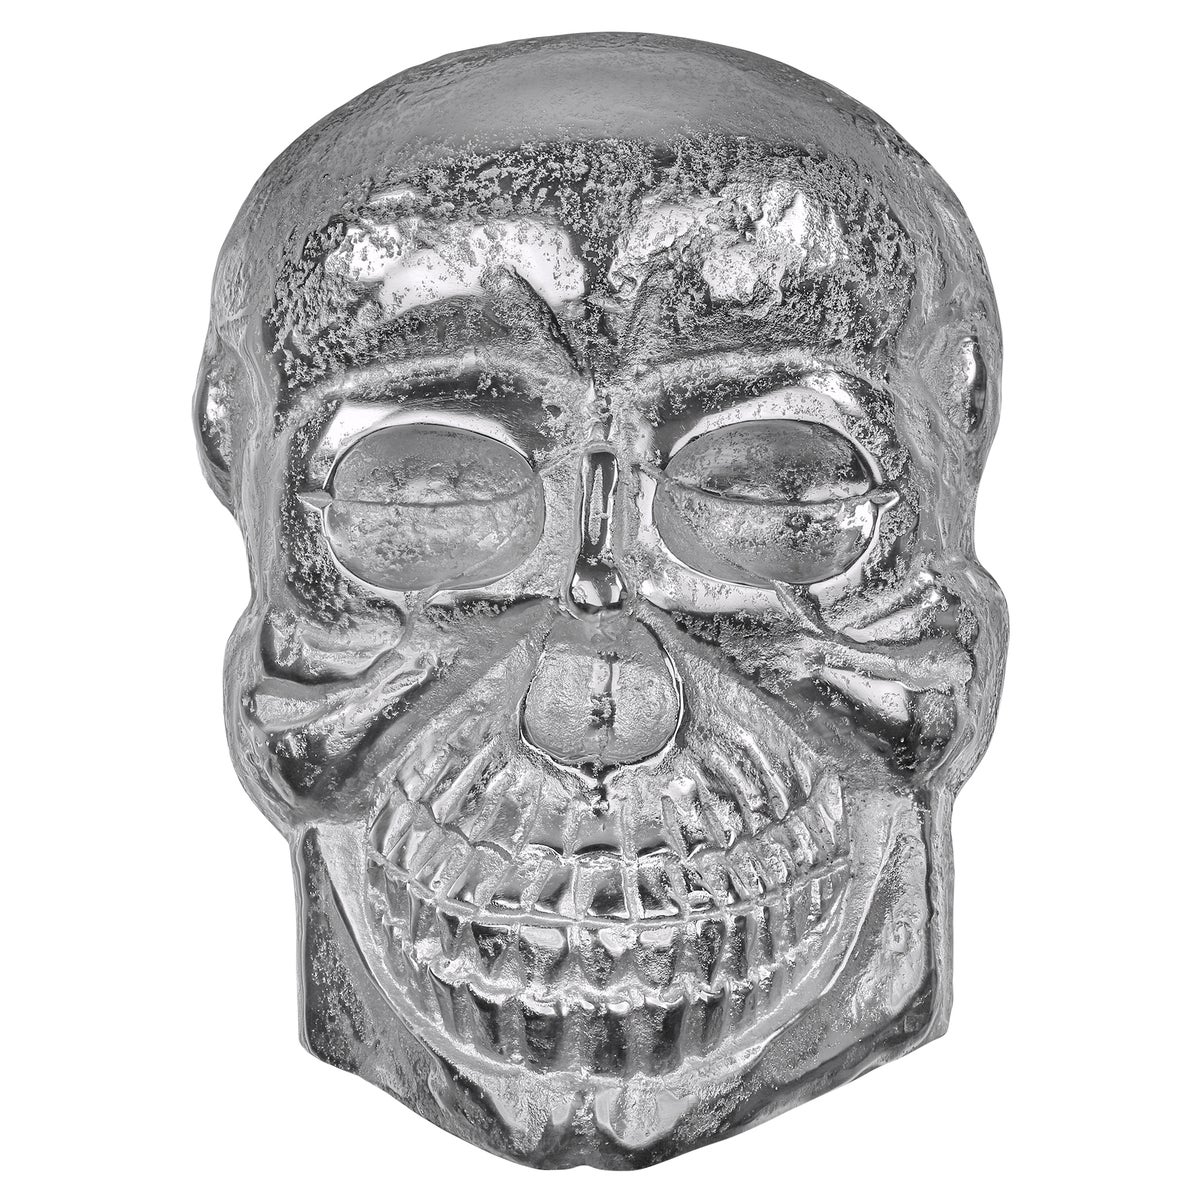 WOMO-DESIGN Deko Skull Totenkopf Unikat 42 x 30 cm (HxB) Silber Glänzend Wandskulptur aus Poliertes Aluminium mit Nickel Finish Gothic Totenschädel Schädel Skulptur Wand Dekoration Wohnaccessoire